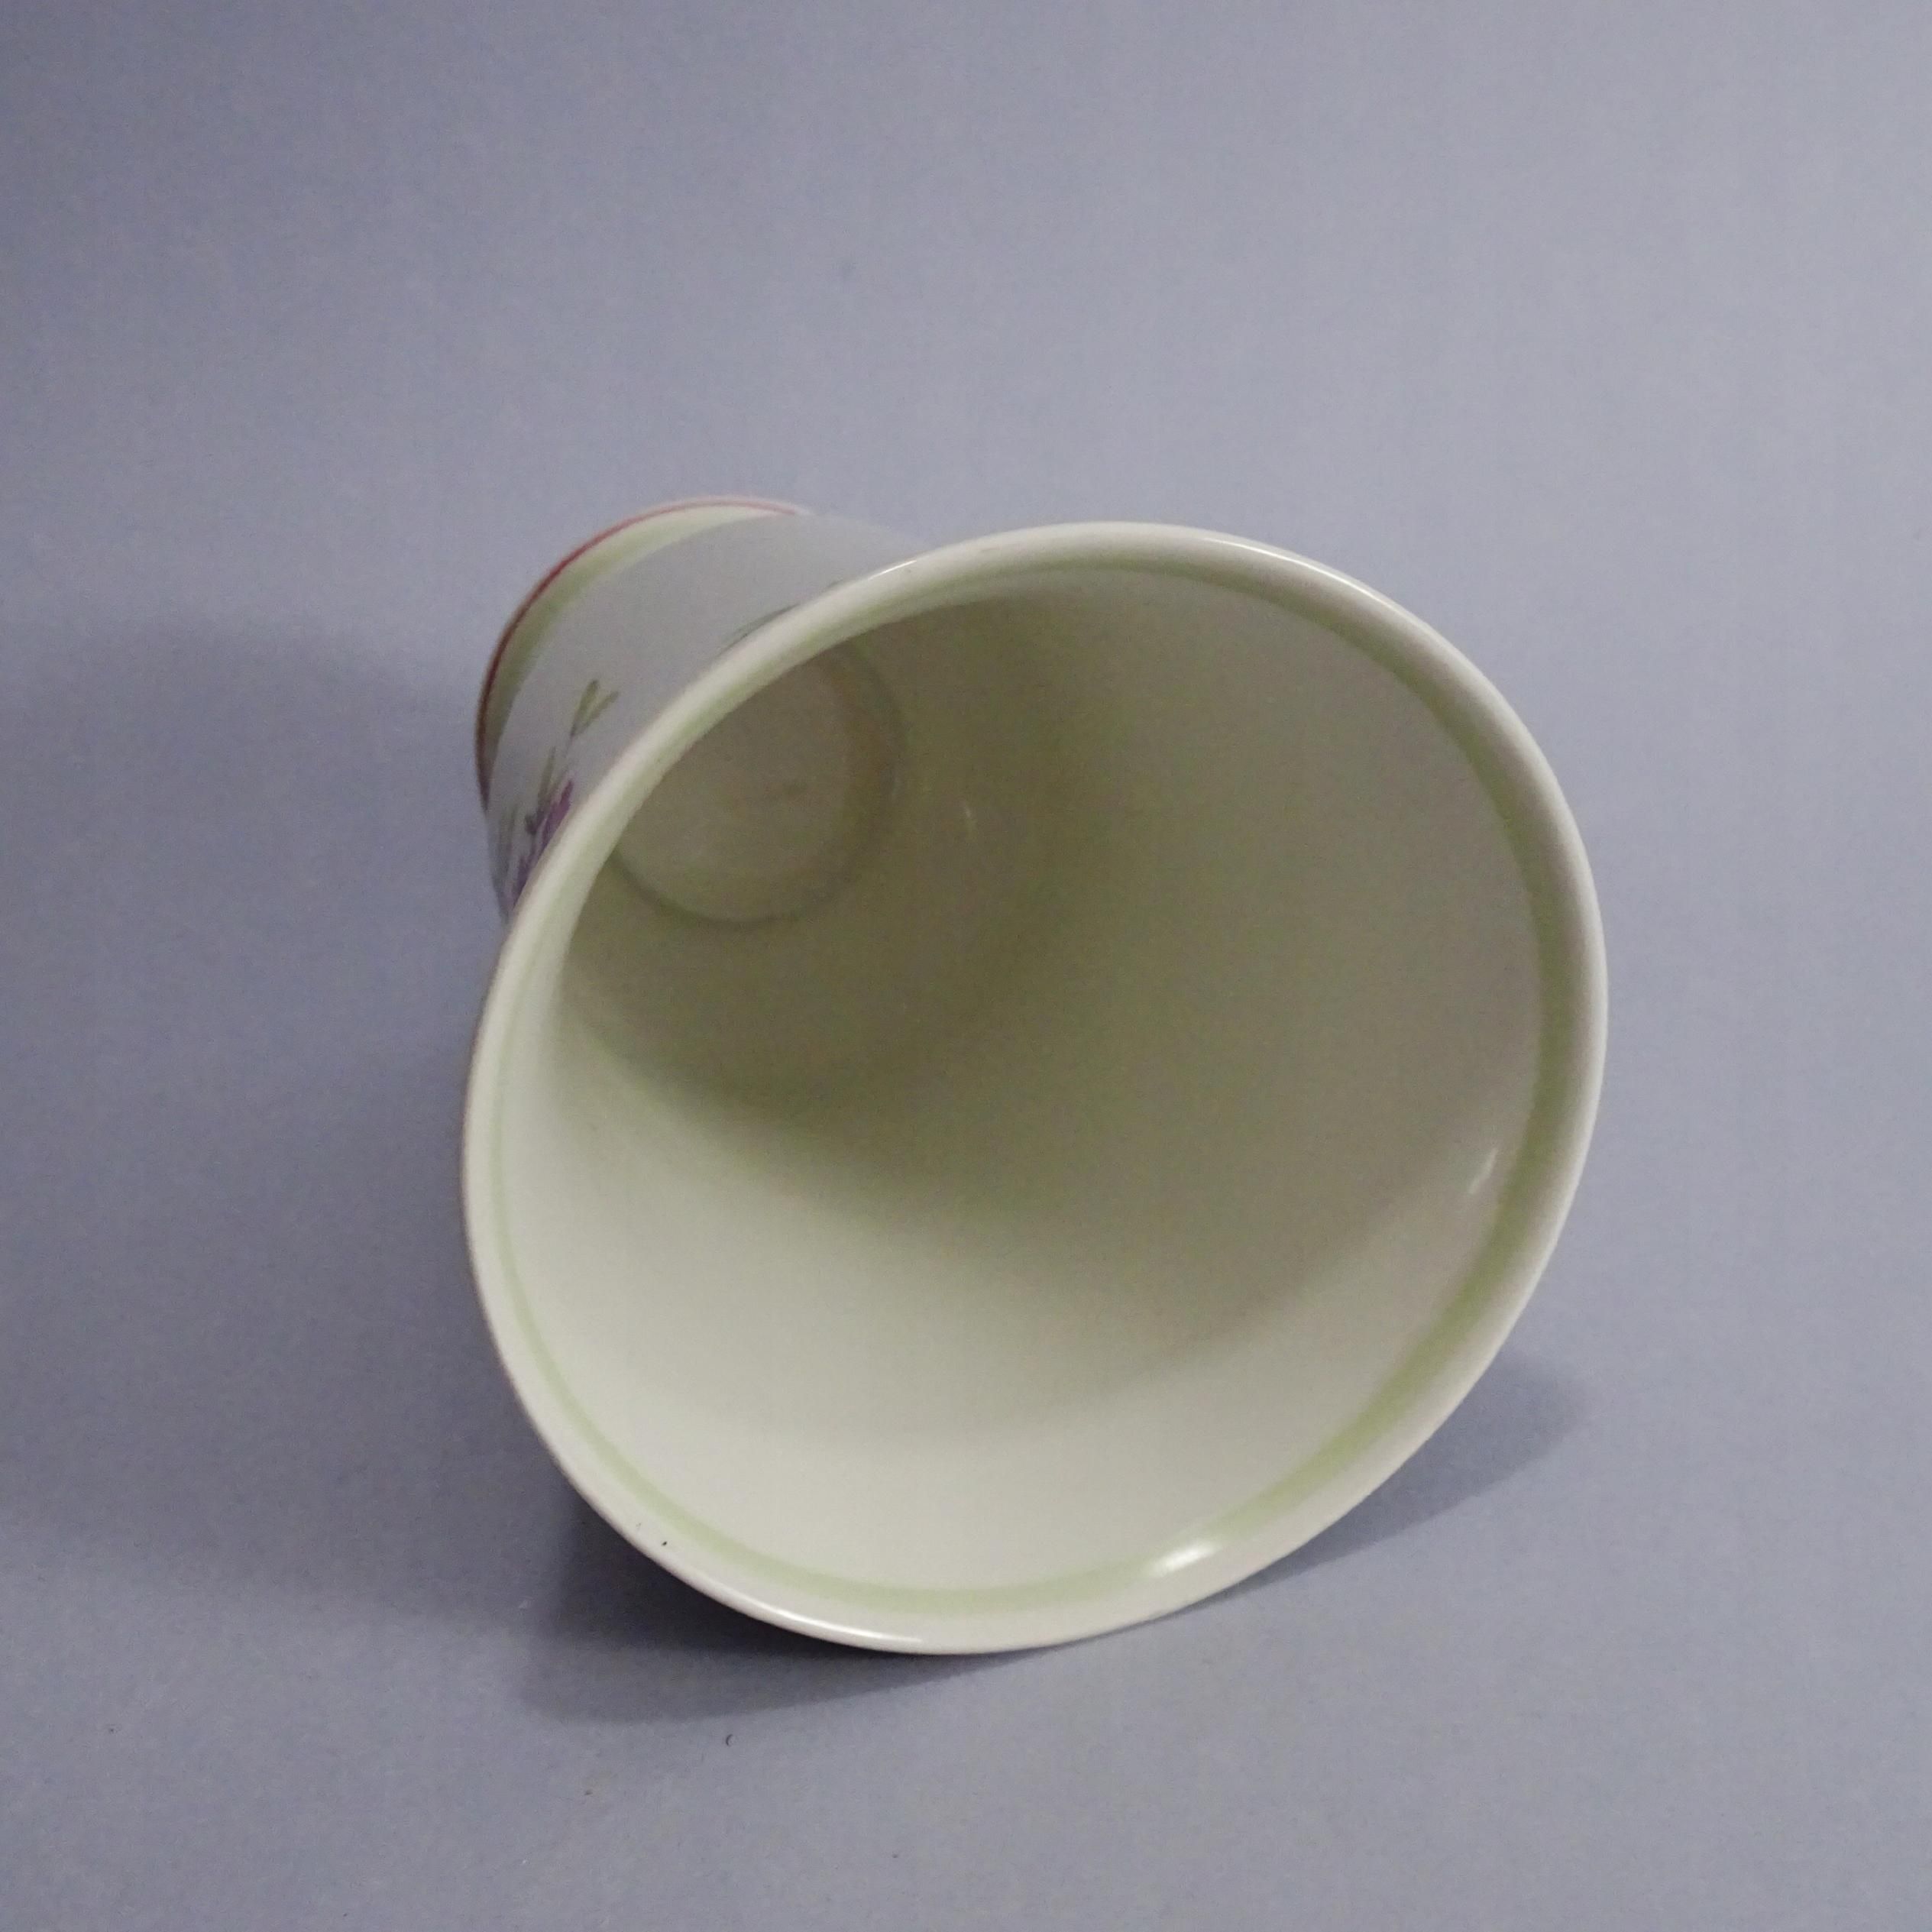 wiemar lata 50/60 piękny wazon porcelanowy